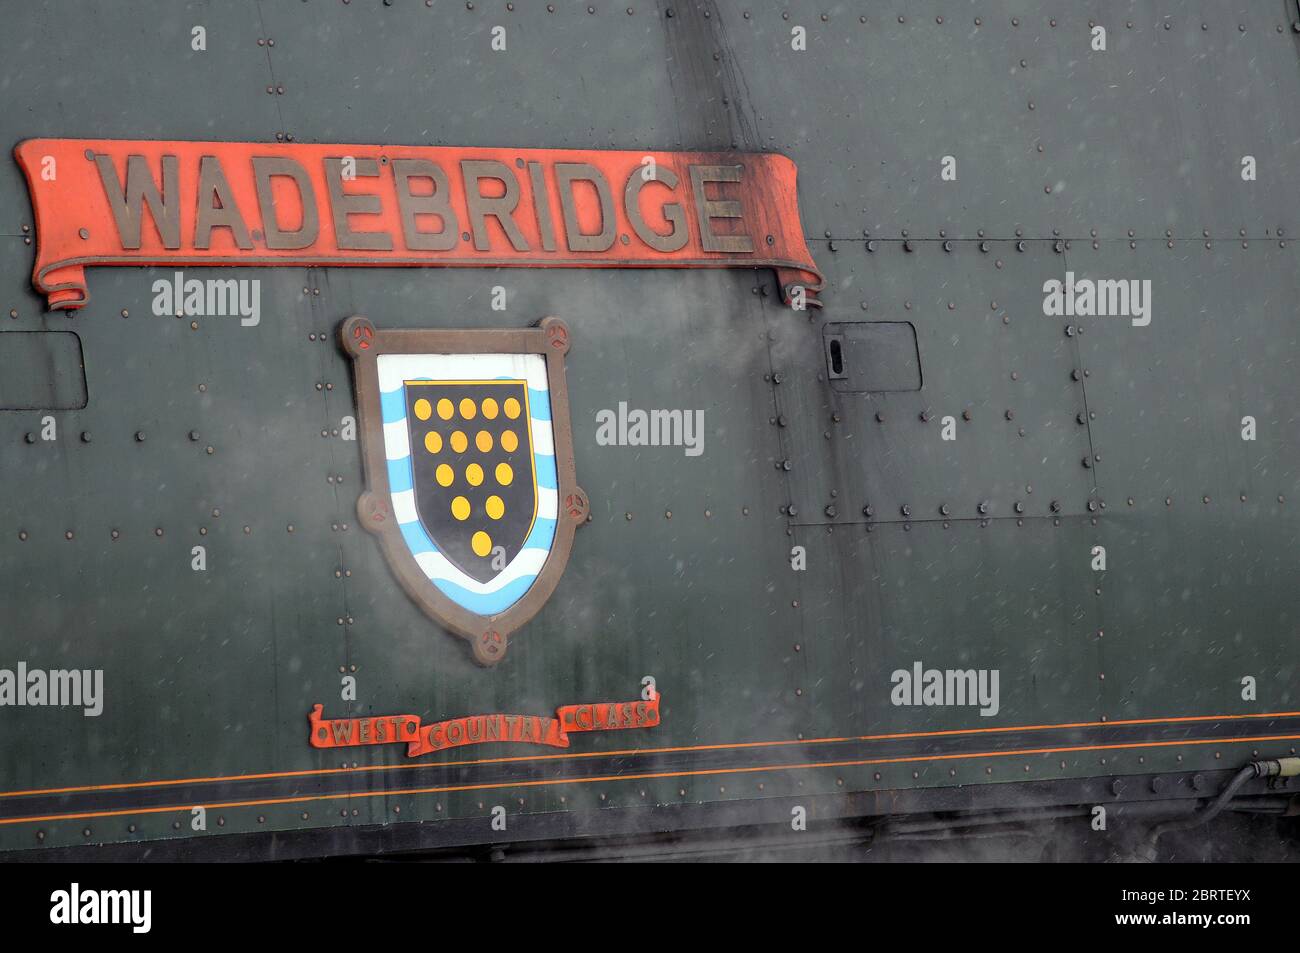 Nameplate - 'WADEBRIDGE'. Stock Photo